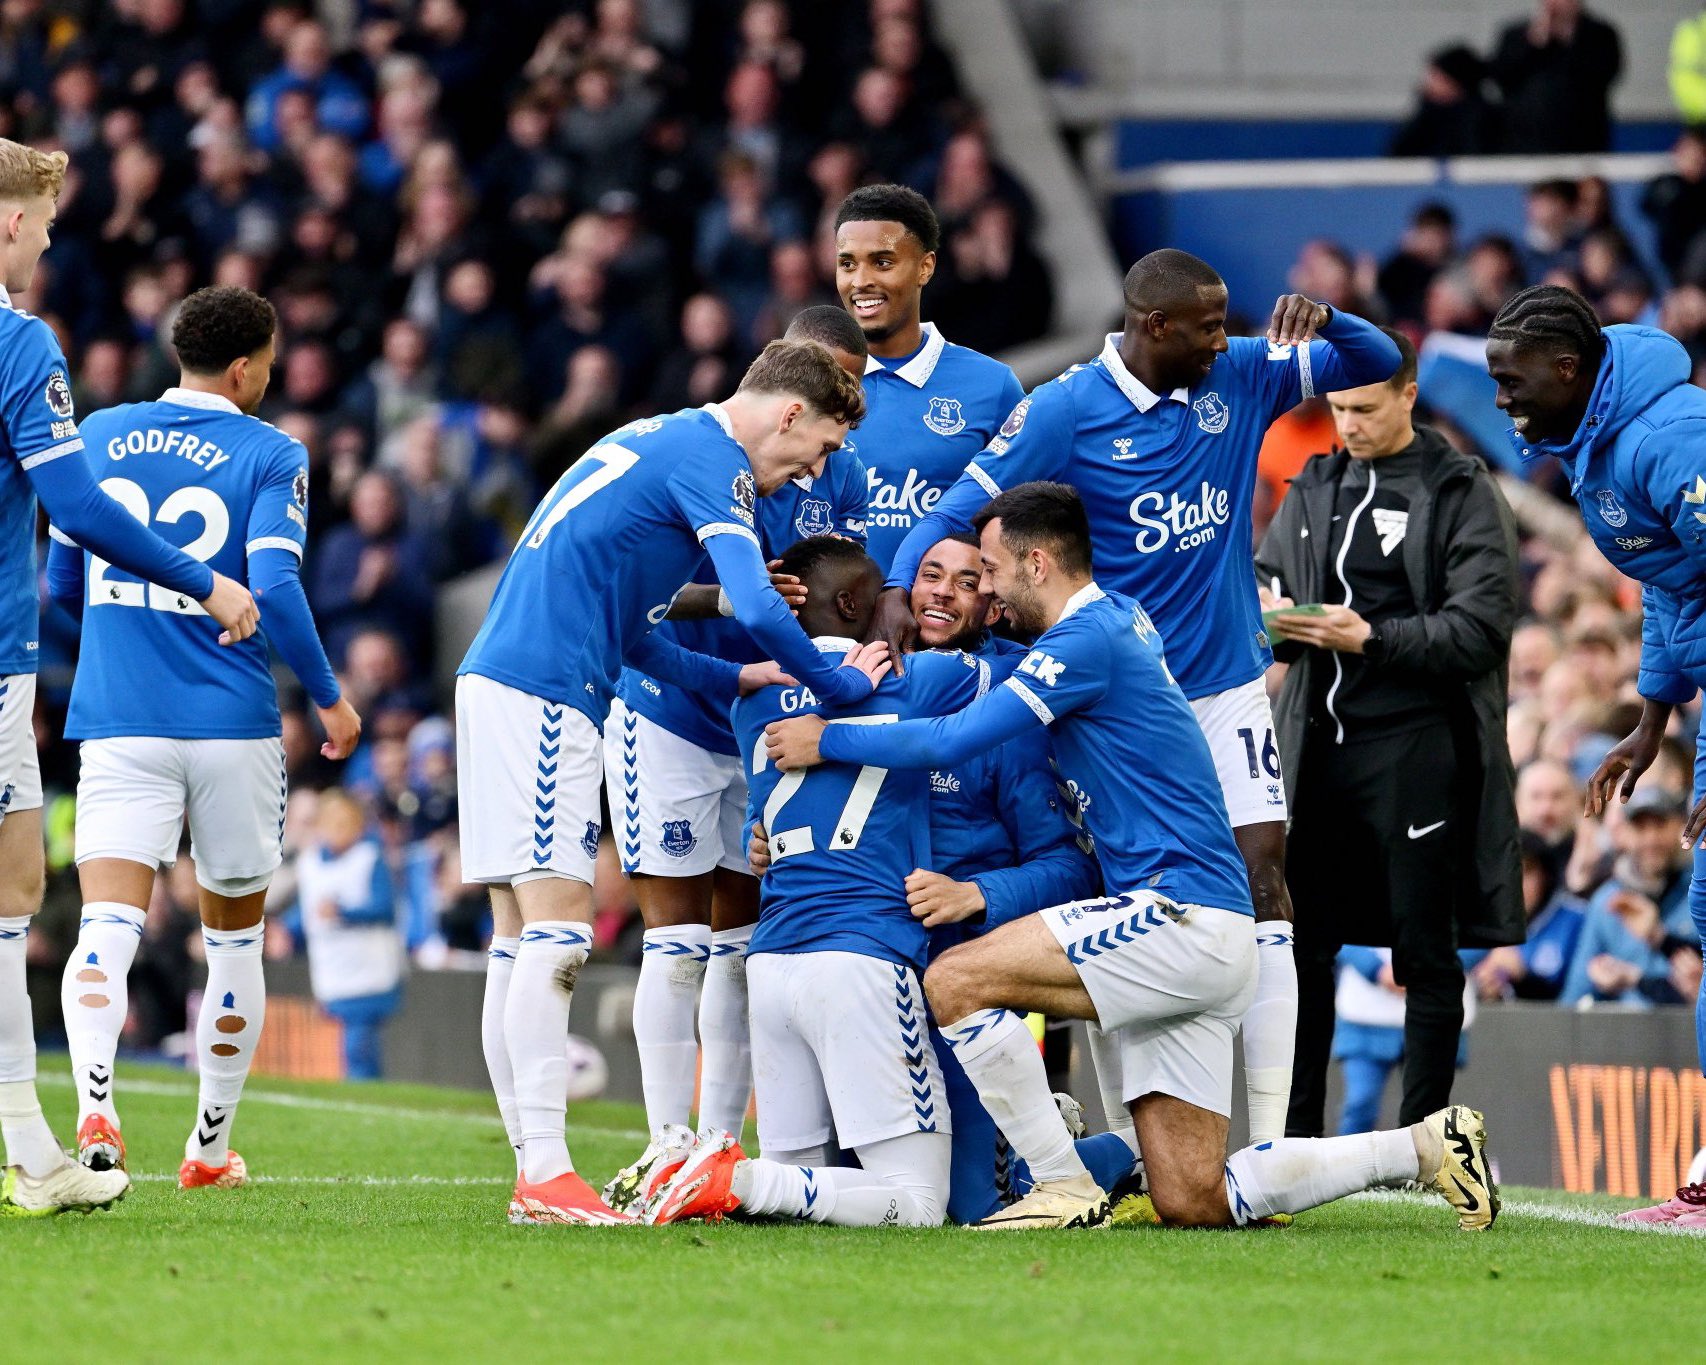 Officiel: Everton se maintient en Premier League grâce à Gana Gueye